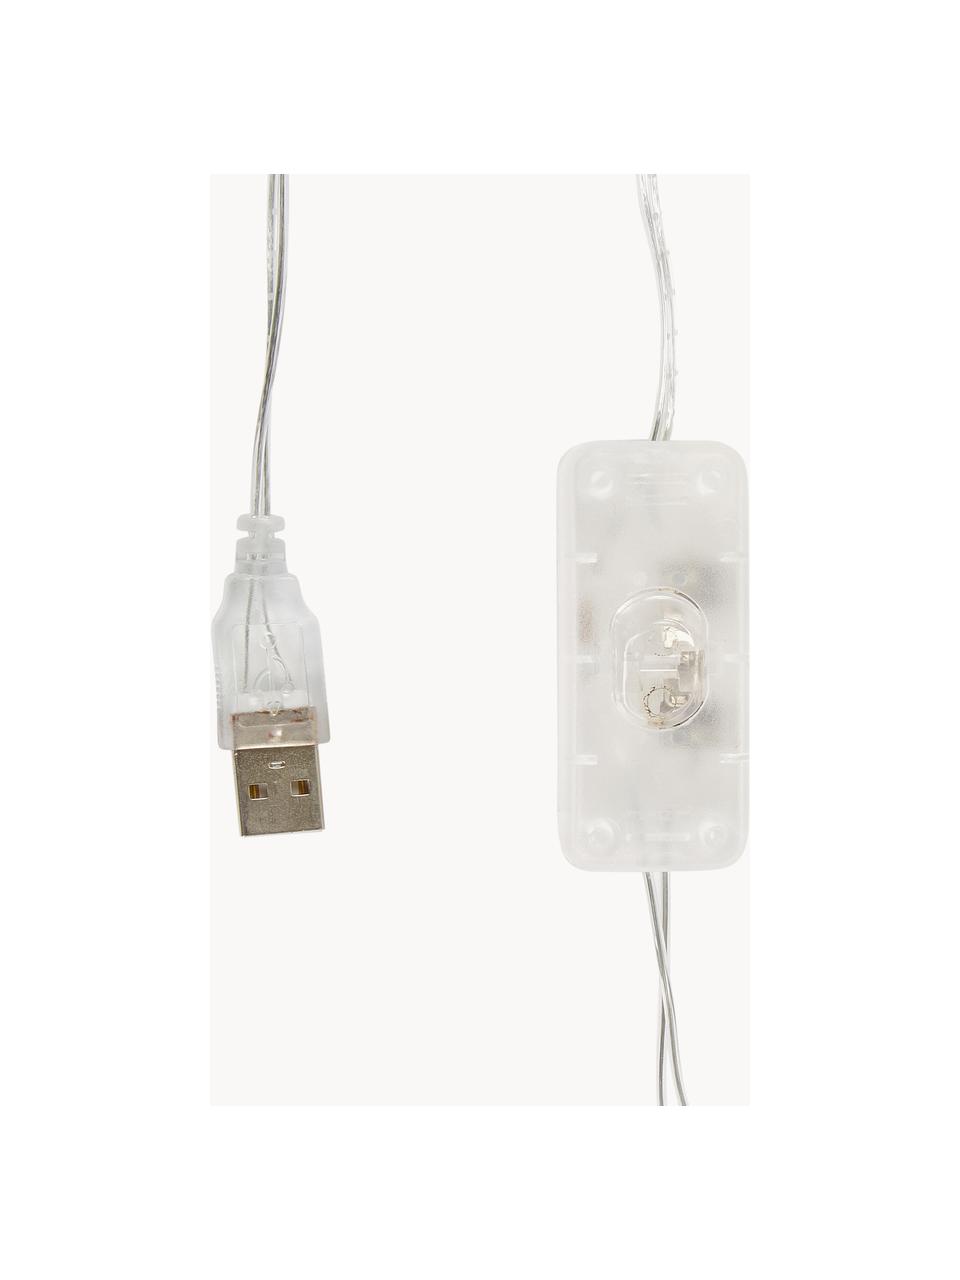 Ghirlanda a LED Colorain, 378 cm, Lanterne: poliestere certificato WF, Tonalità beige, marroni e rosa, Lung. 378 cm